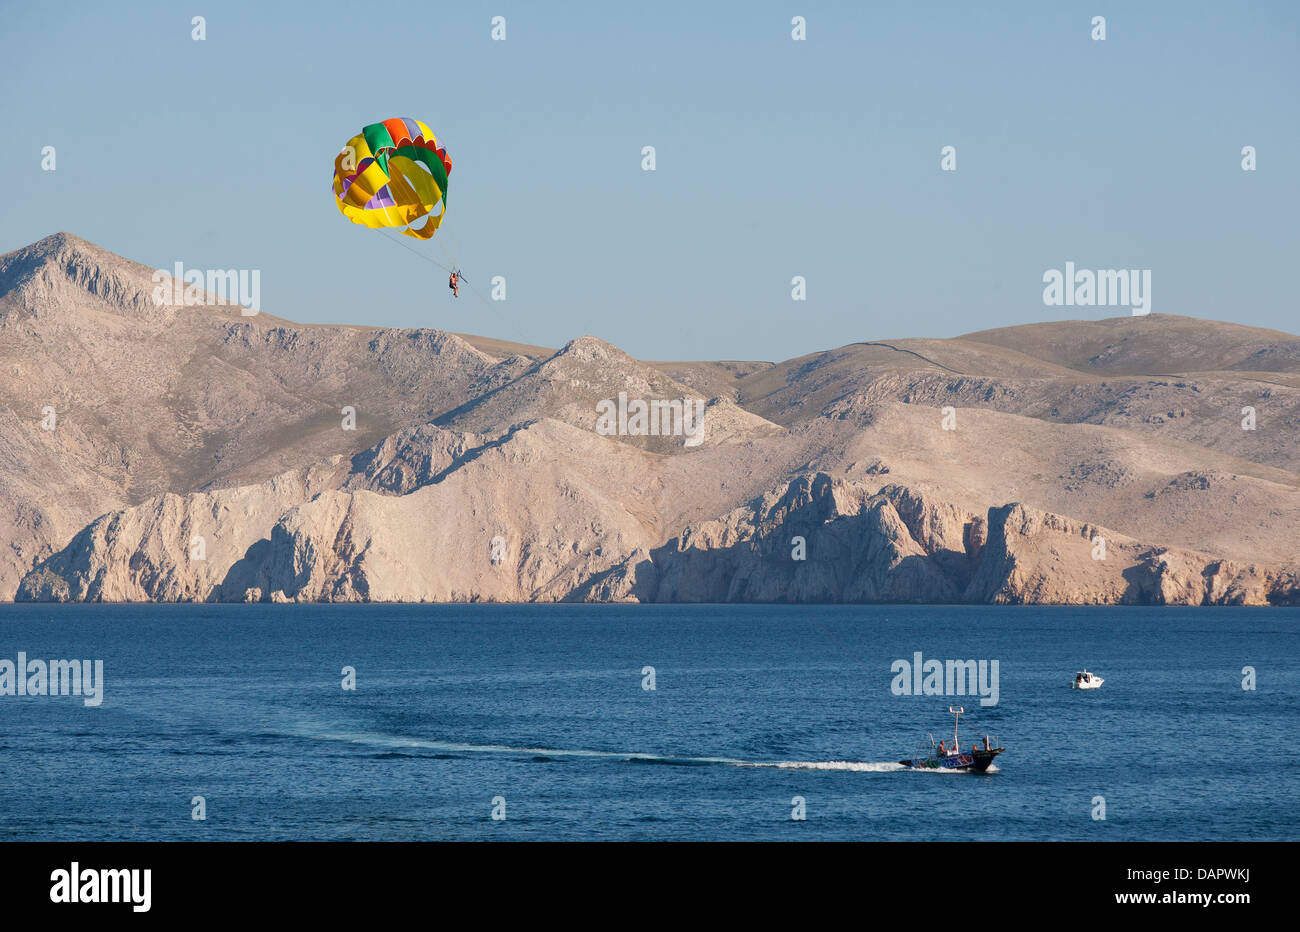 La Croatie, le parachute ascensionnel sur la mer Adriatique à l'île de Krk Banque D'Images